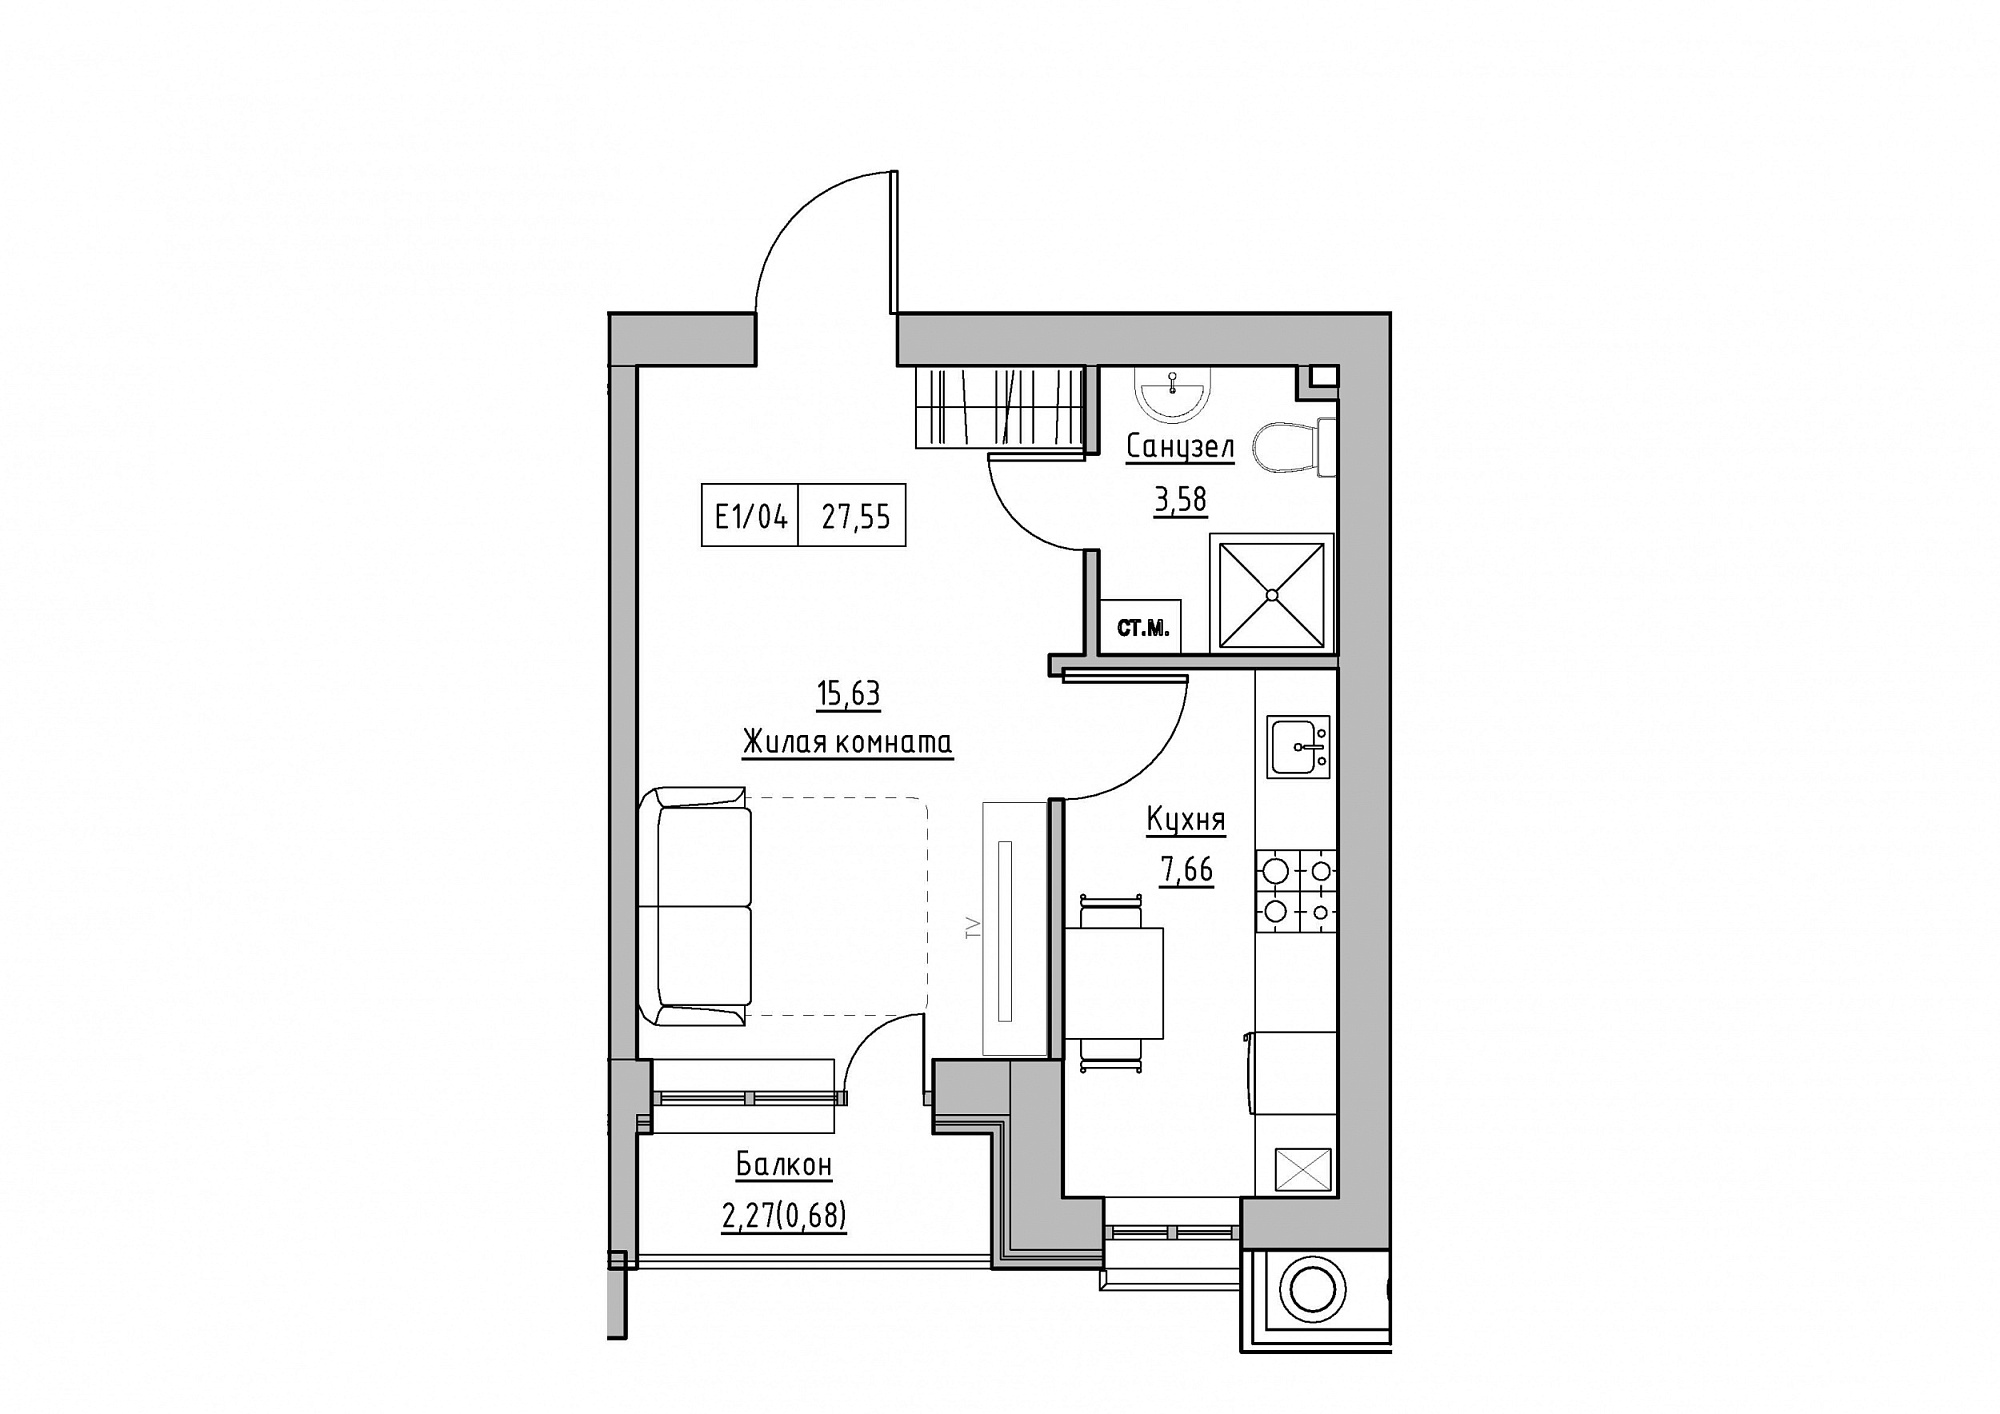 Планування 1-к квартира площею 27.55м2, KS-012-05/0007.